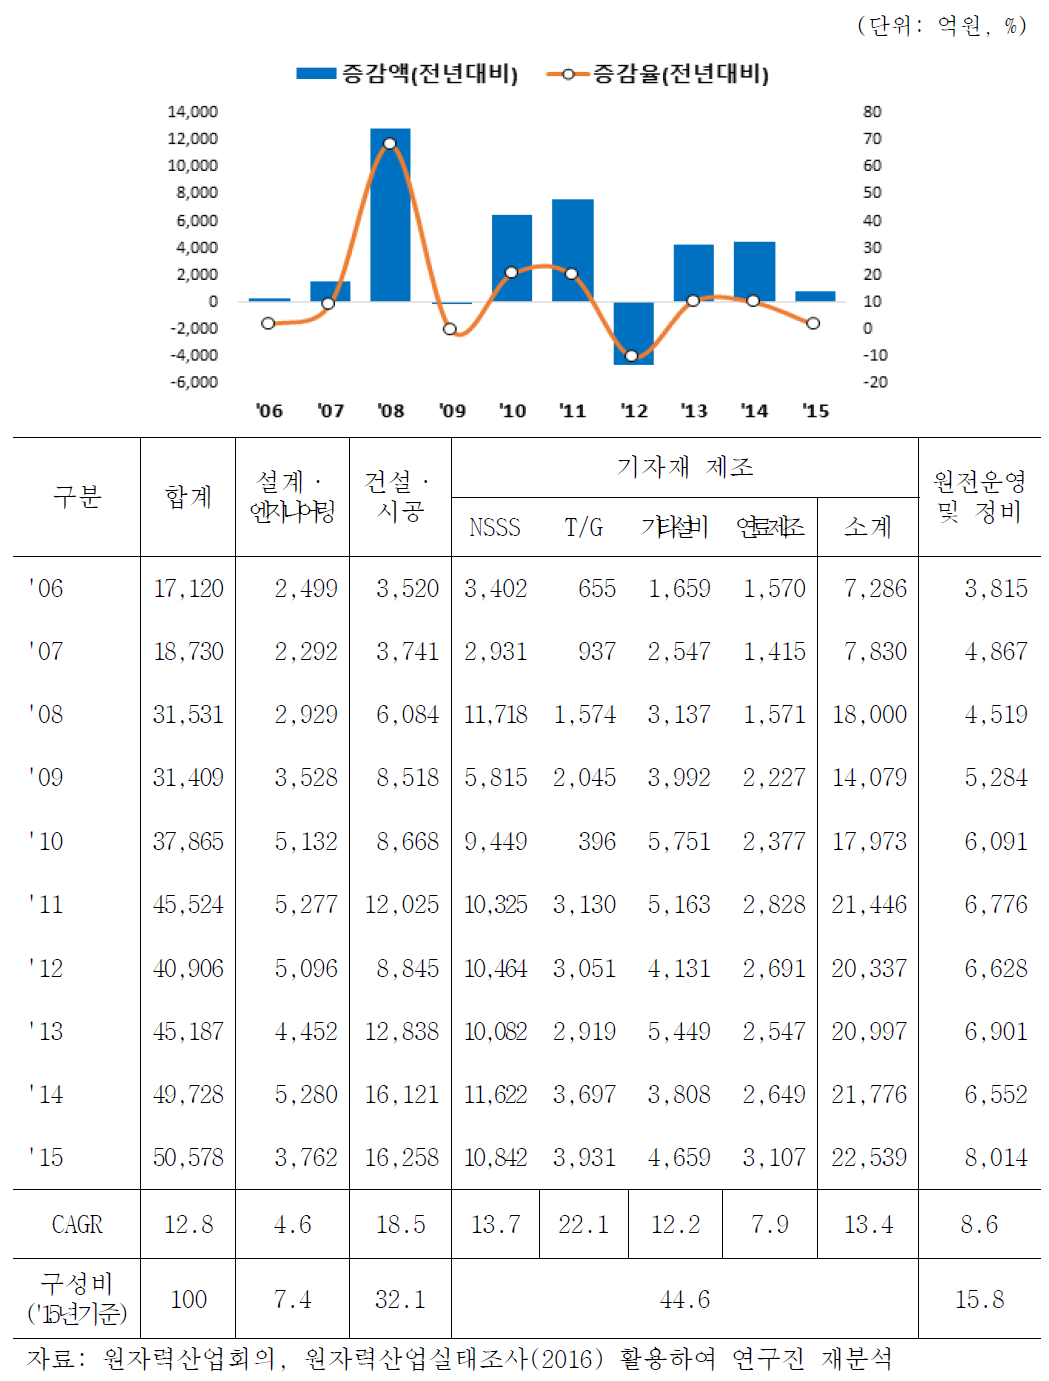 원전건설 및 운영분야 매출액 증감 추이(2006-2015)